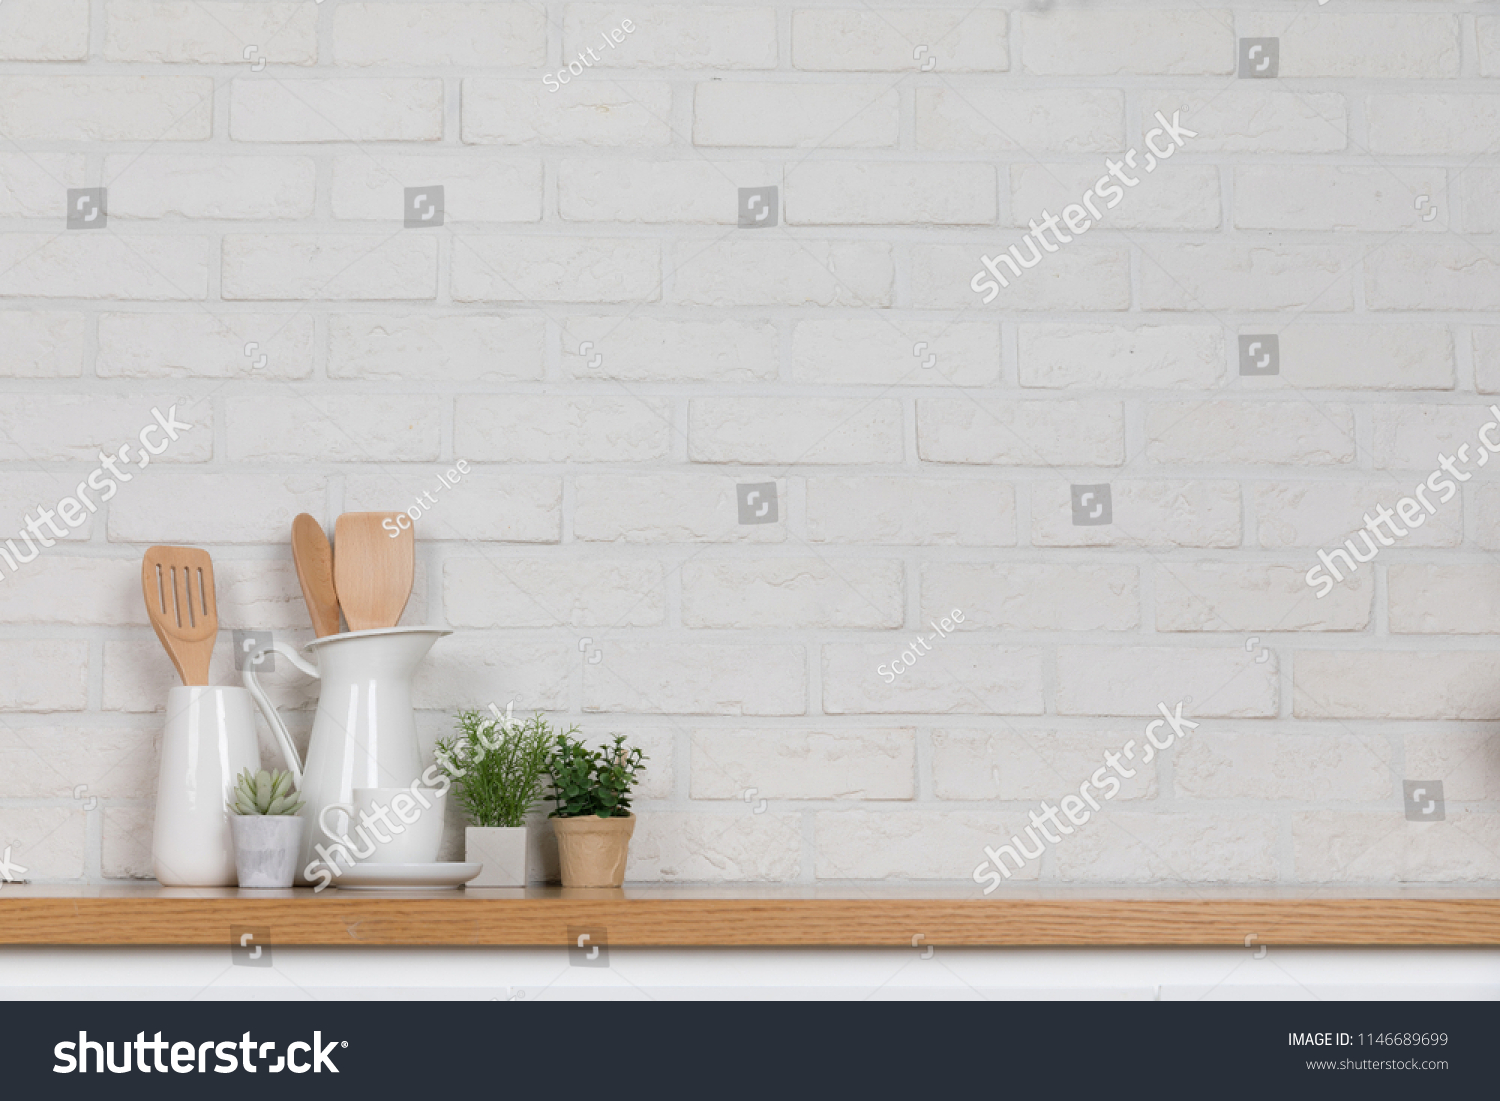 Kitchen utensils and dishware on wooden shelf. Kitchen interior background.Text space. #1146689699